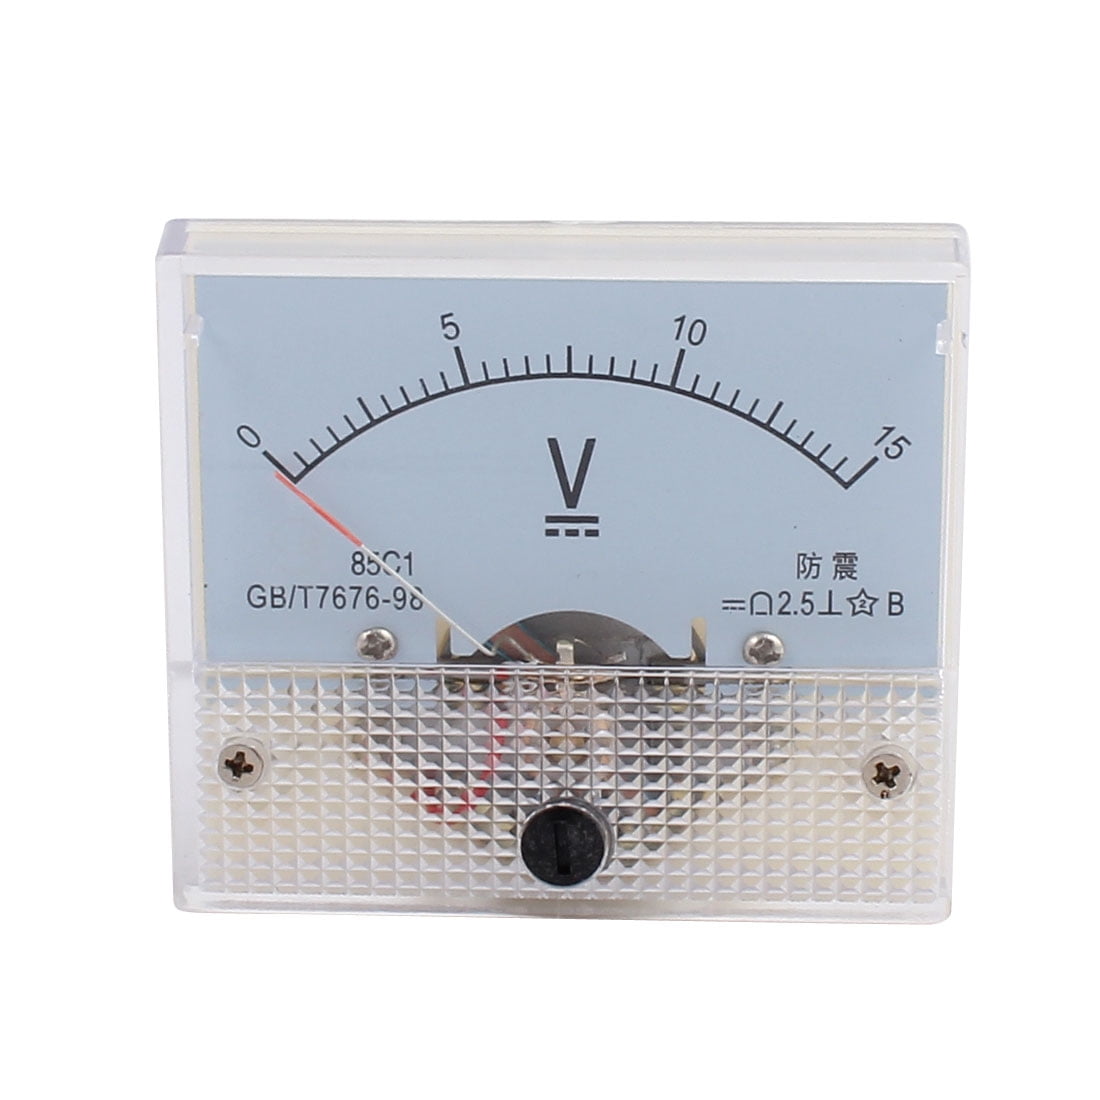 uxcell DC 0-20V Analog Volt Voltage Panel Meter Voltmeter Gauge 85C1 